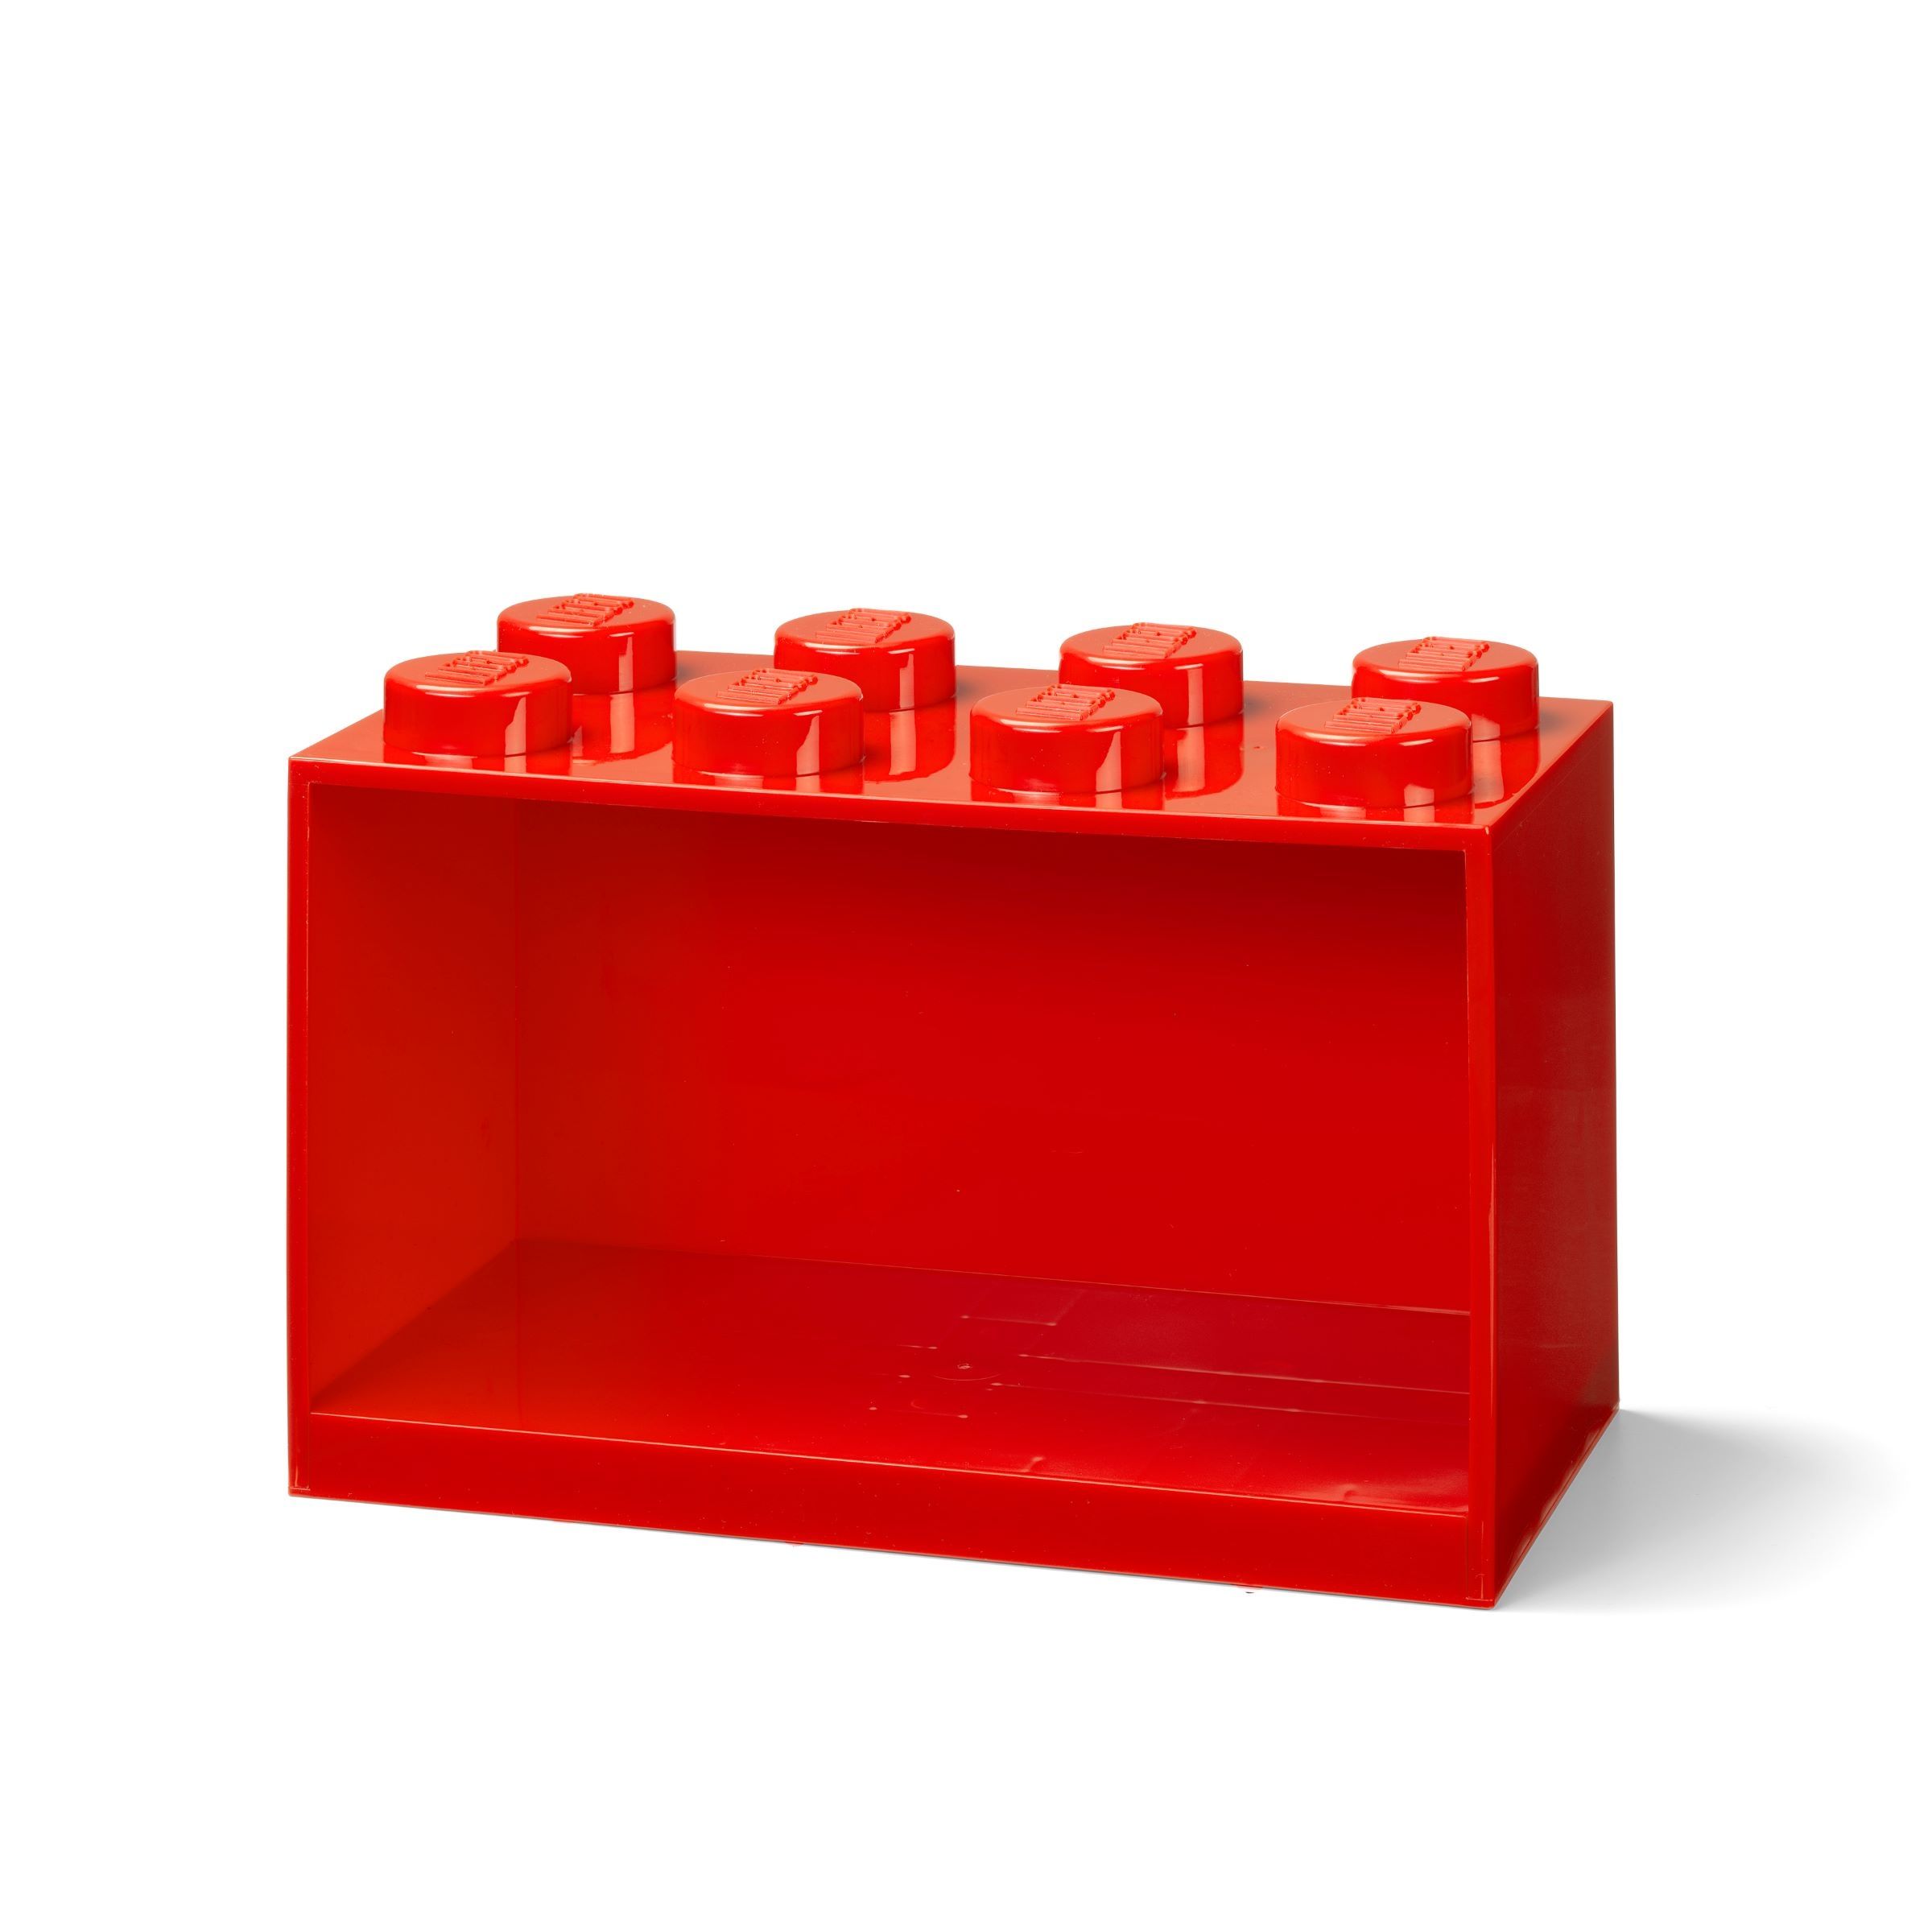 LEGO Gear 5007284 Steinregal mit 8 Noppen in Rot